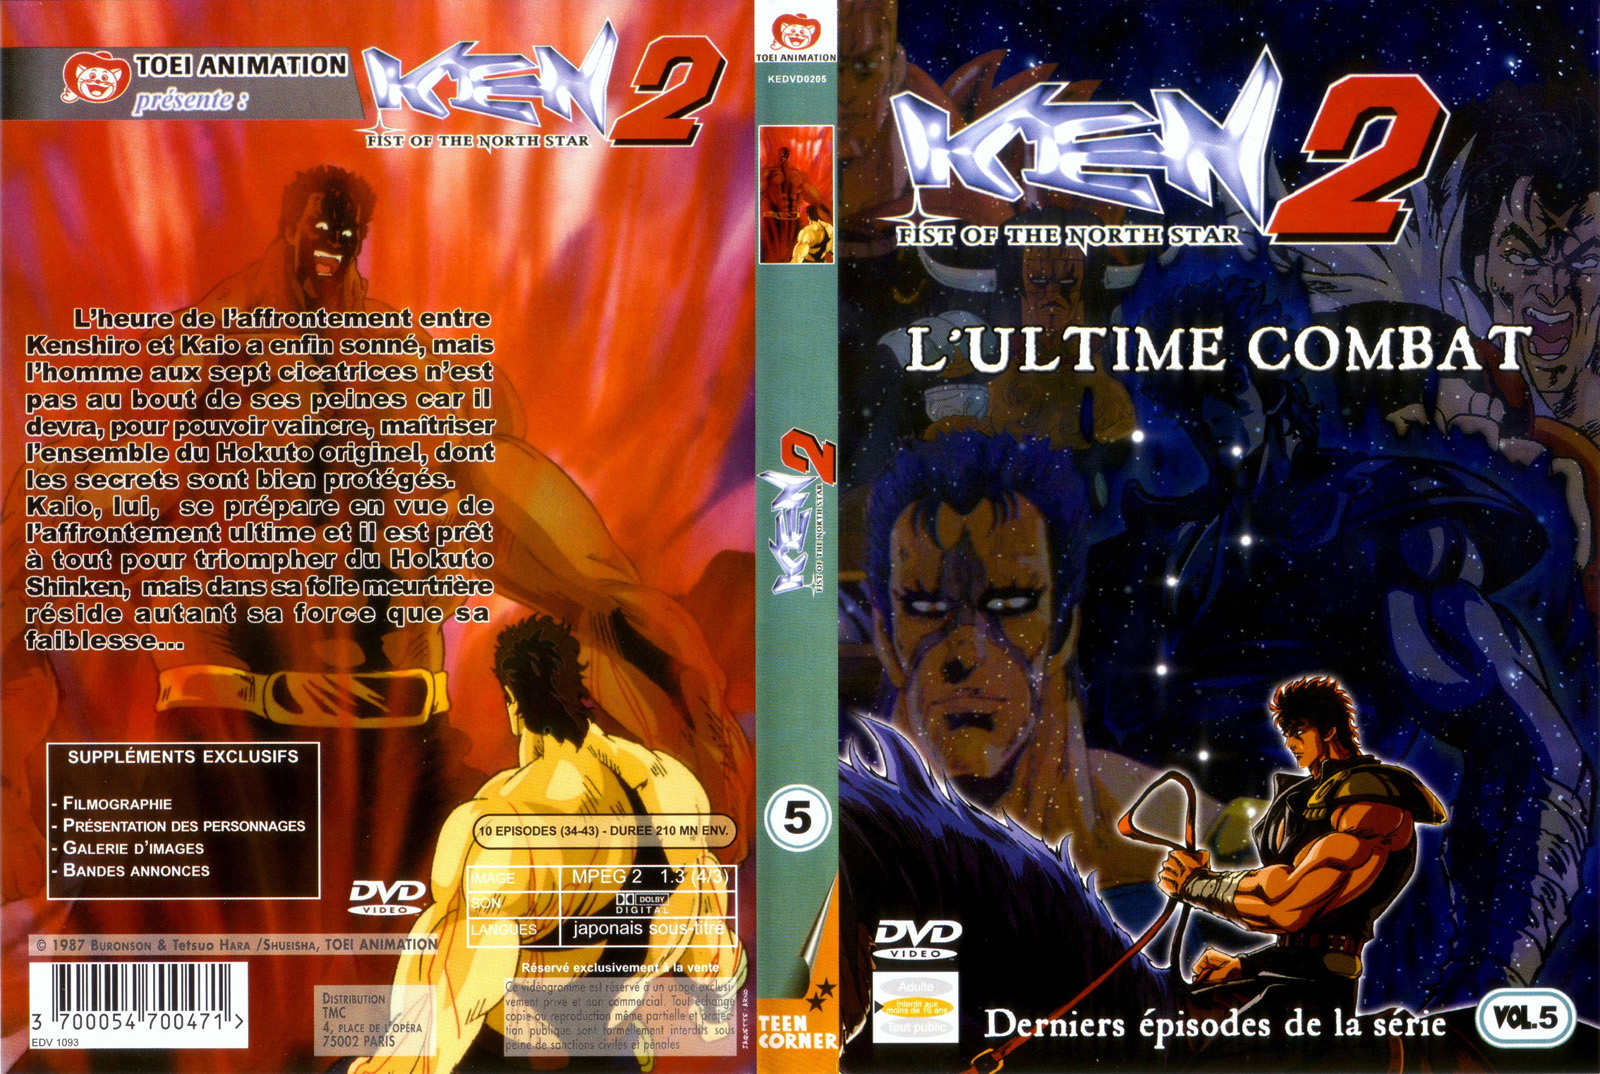 Jaquette DVD Ken 2 vol 5